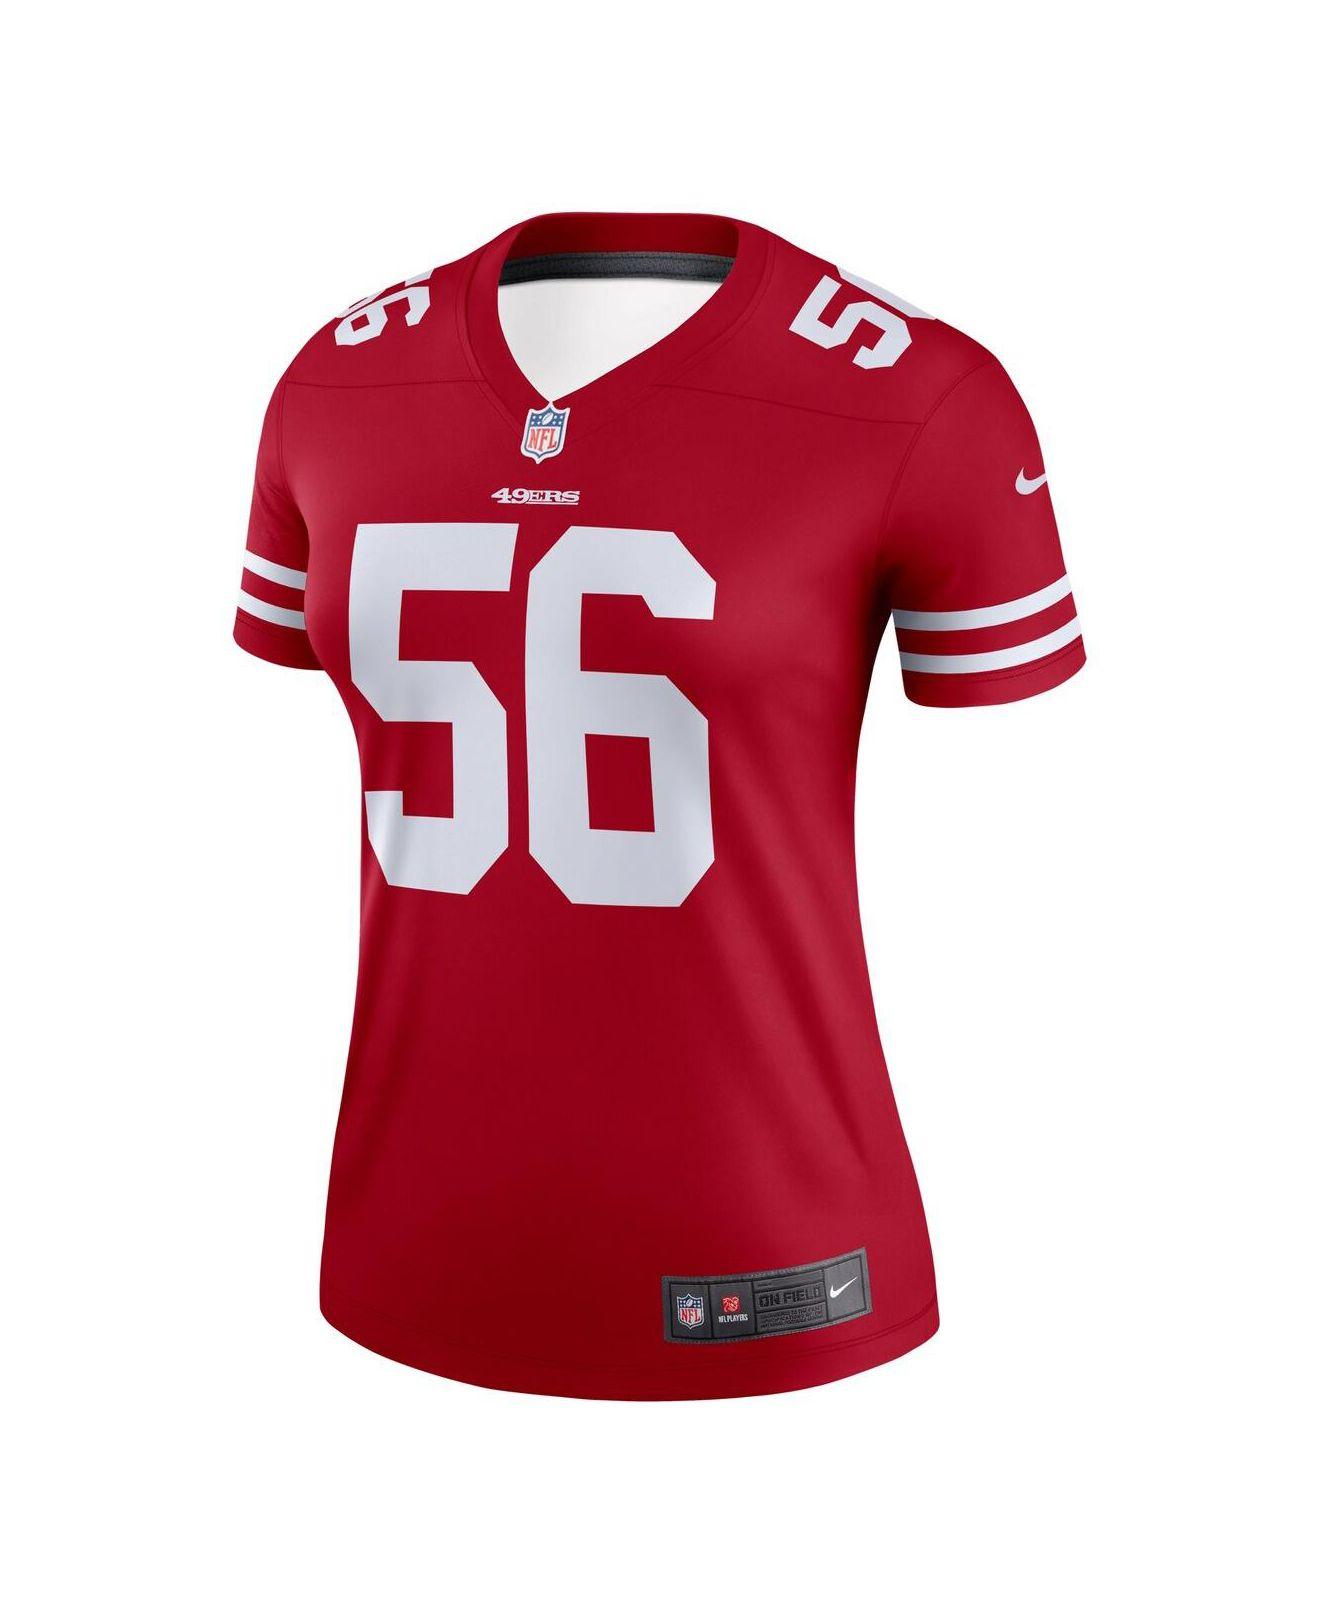 women's kittle 49ers jersey